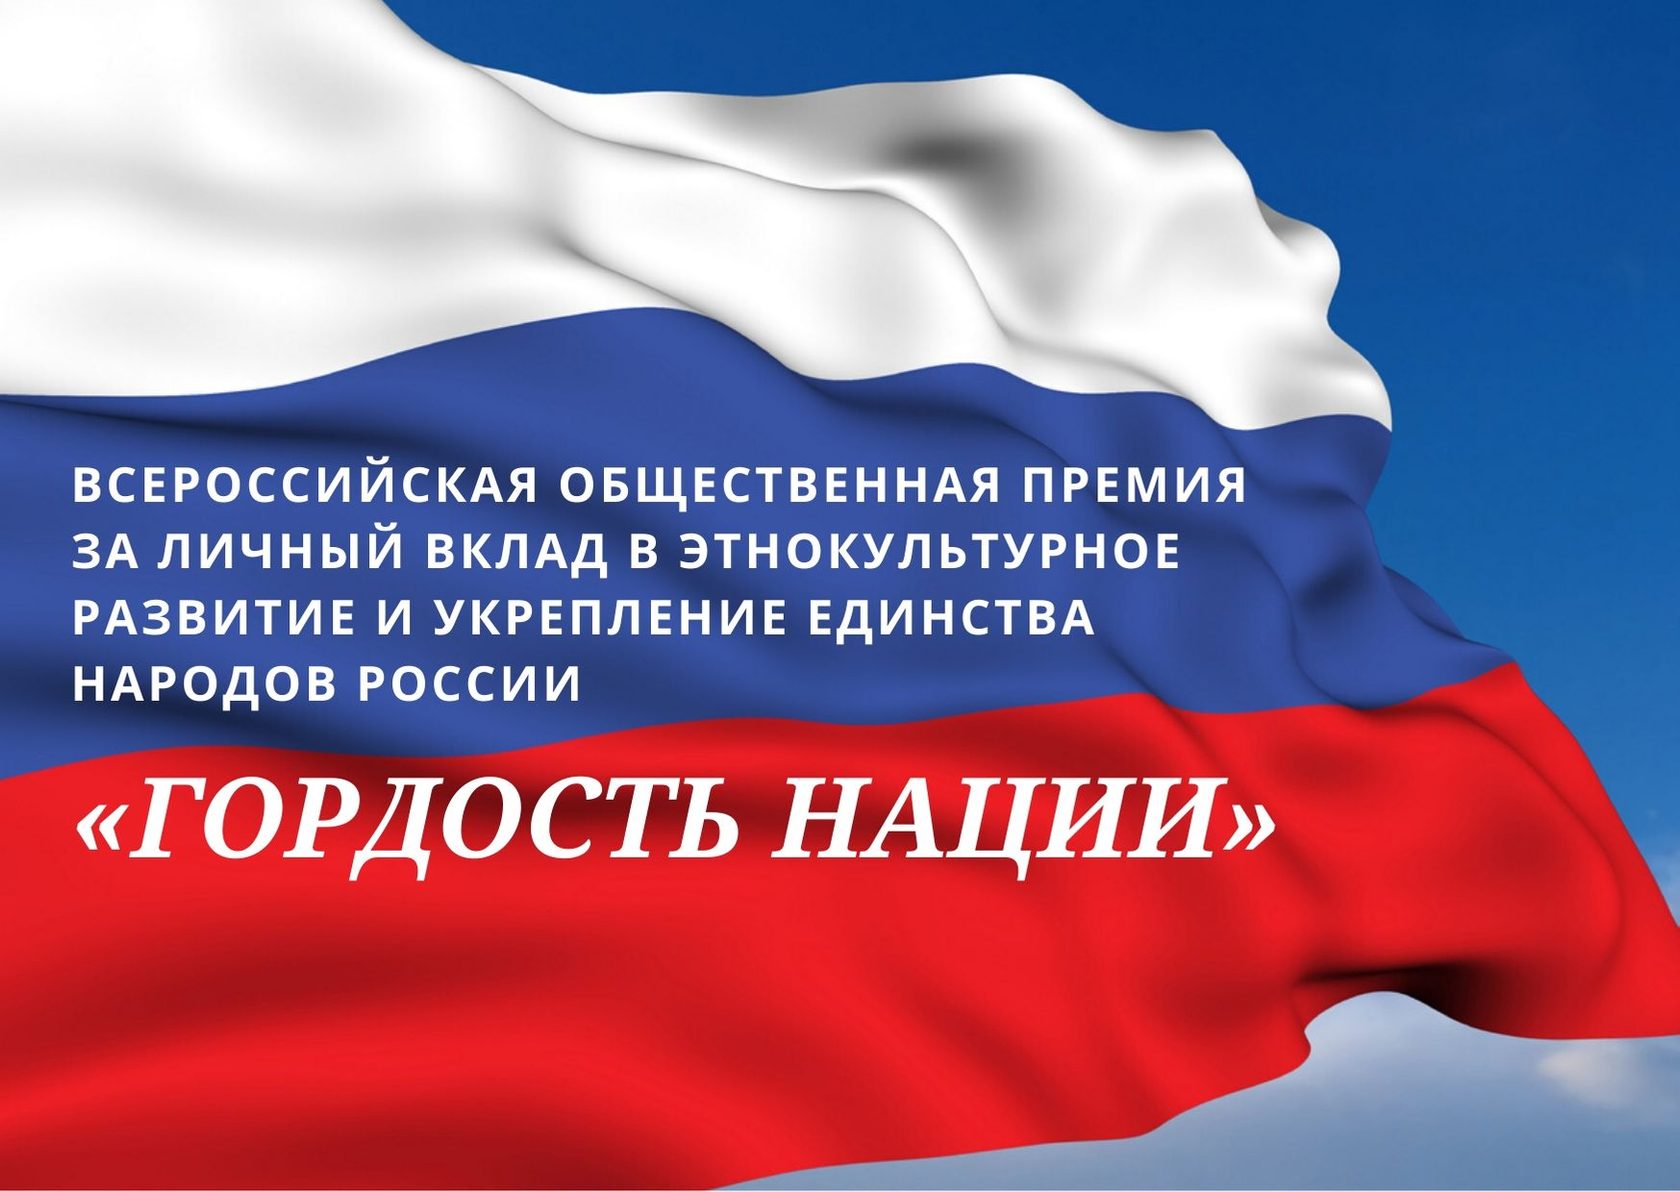 В России учреждена первая Всероссийская общественная премия в этнокультурной сфере, открыт приём заявок